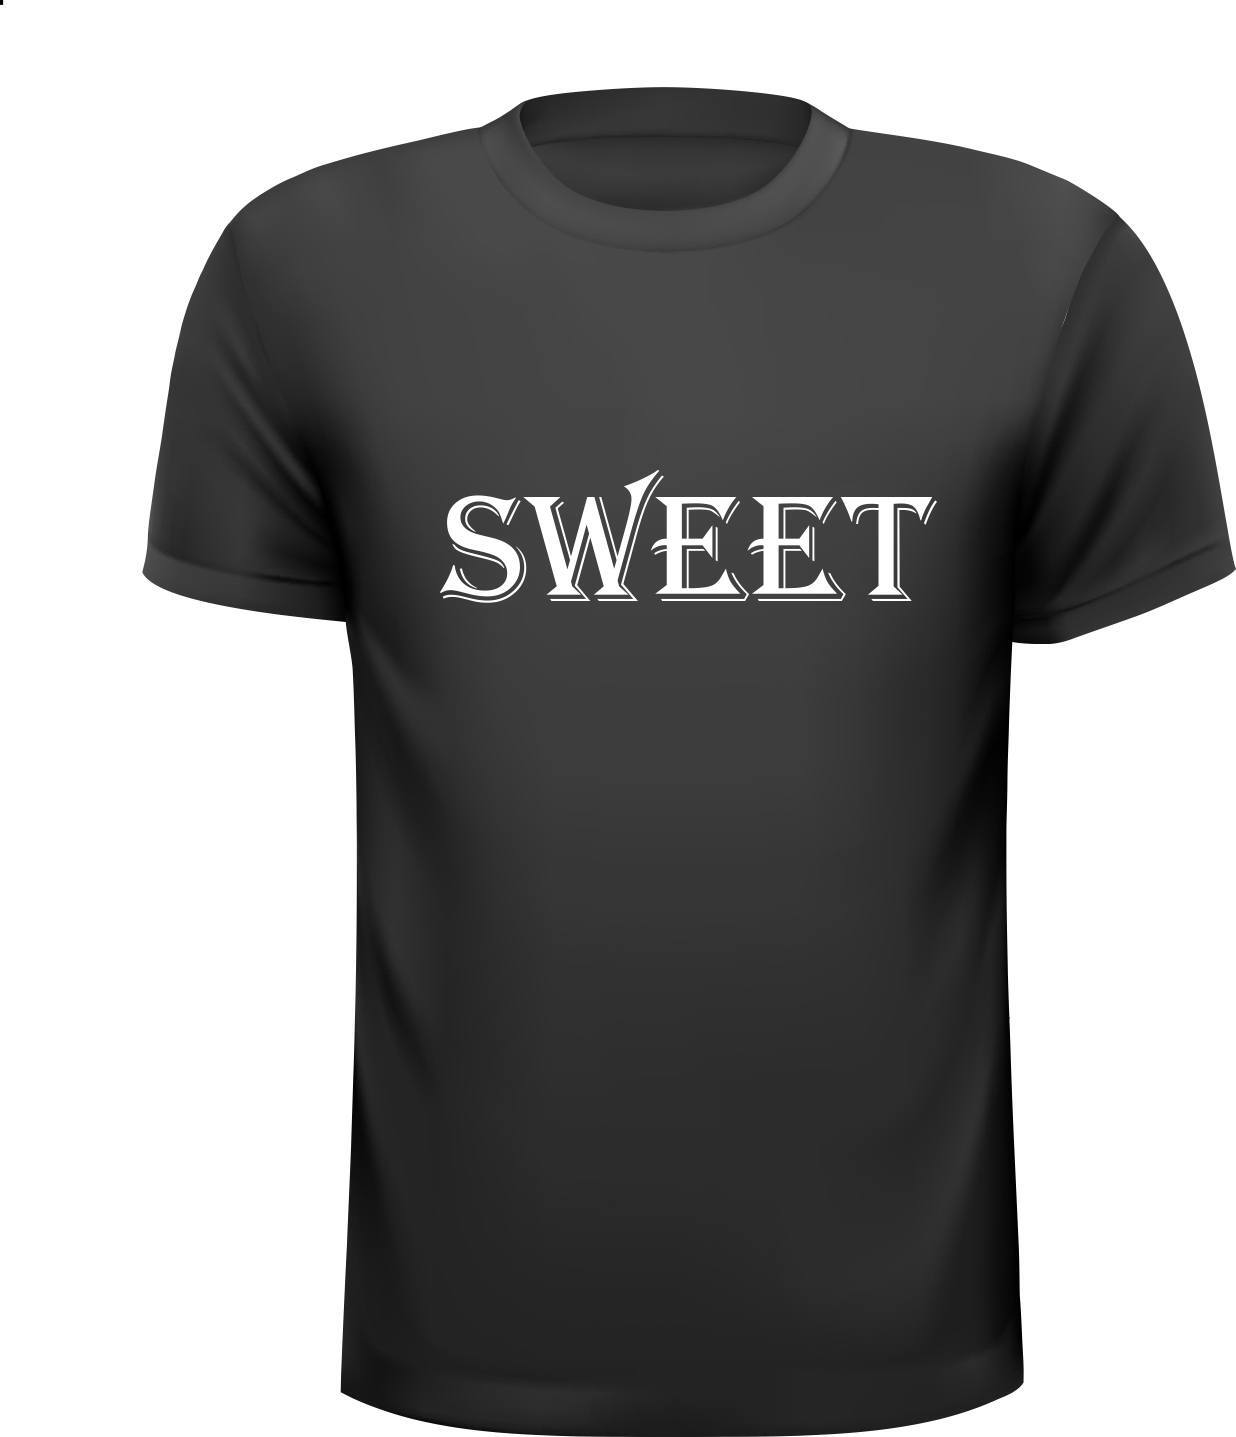 Sweet T-shirt lief lieverd liefhebbend